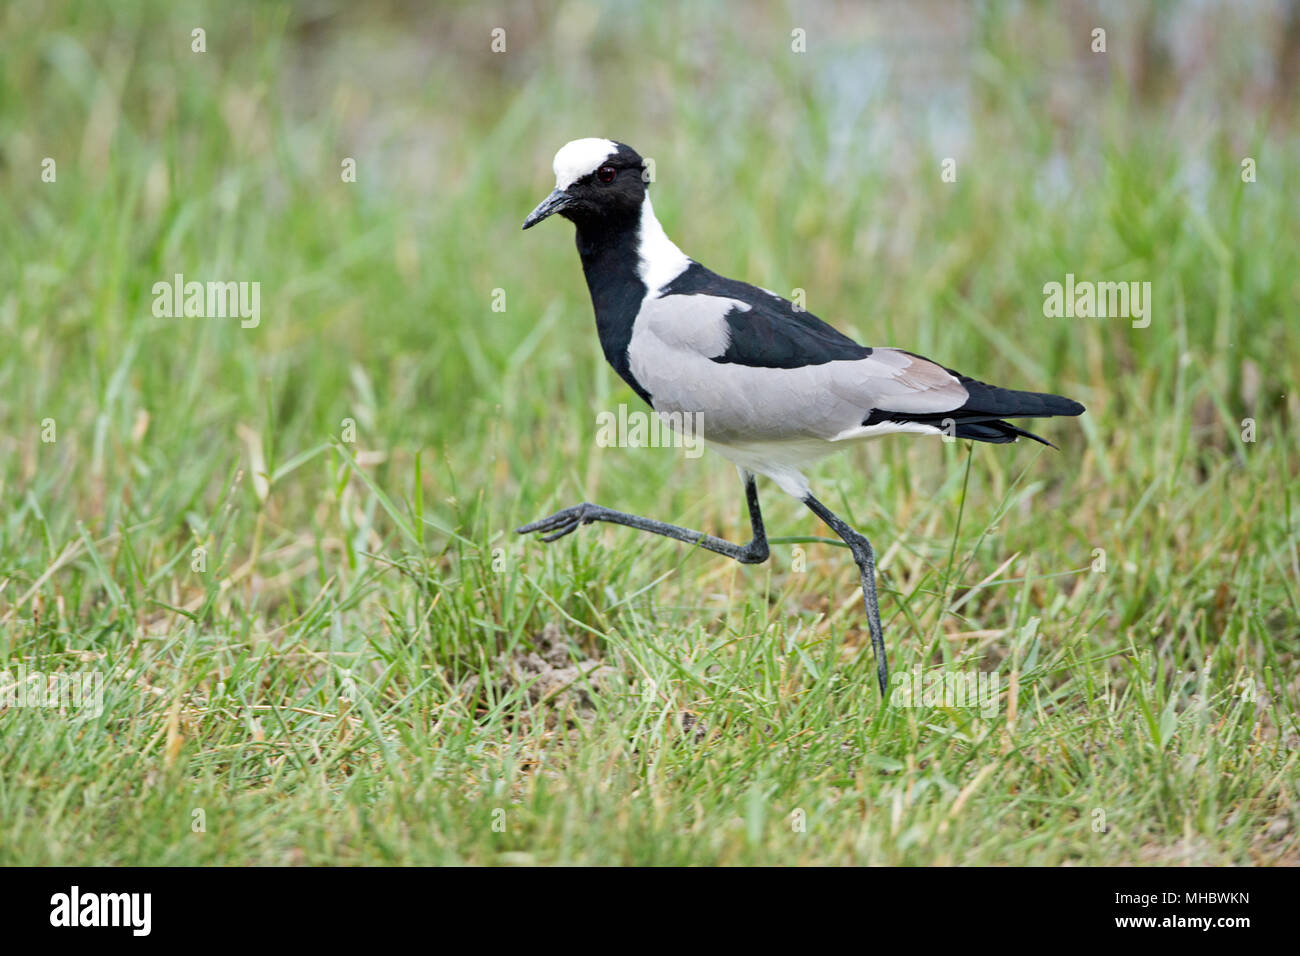 Herrero o chorlito Lapwing (Vanellus armatus). Foto de stock